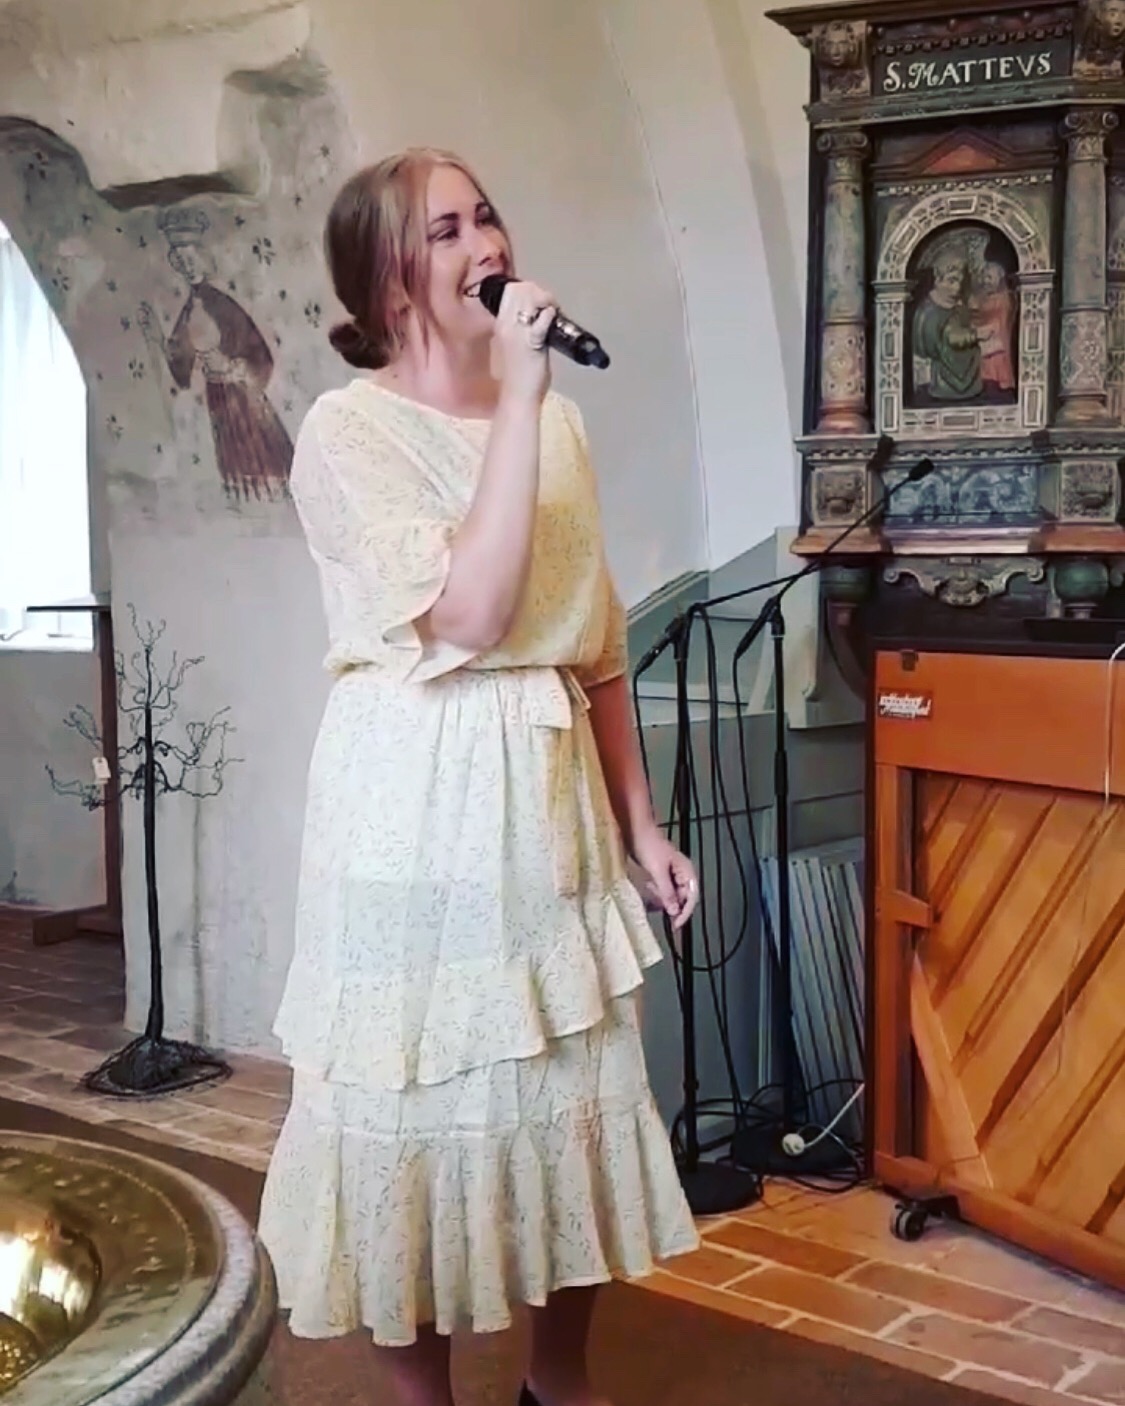 Musik i sommarkväll - Djurröds kyrka, 2019. Foto: Lisbeth Lindehagen